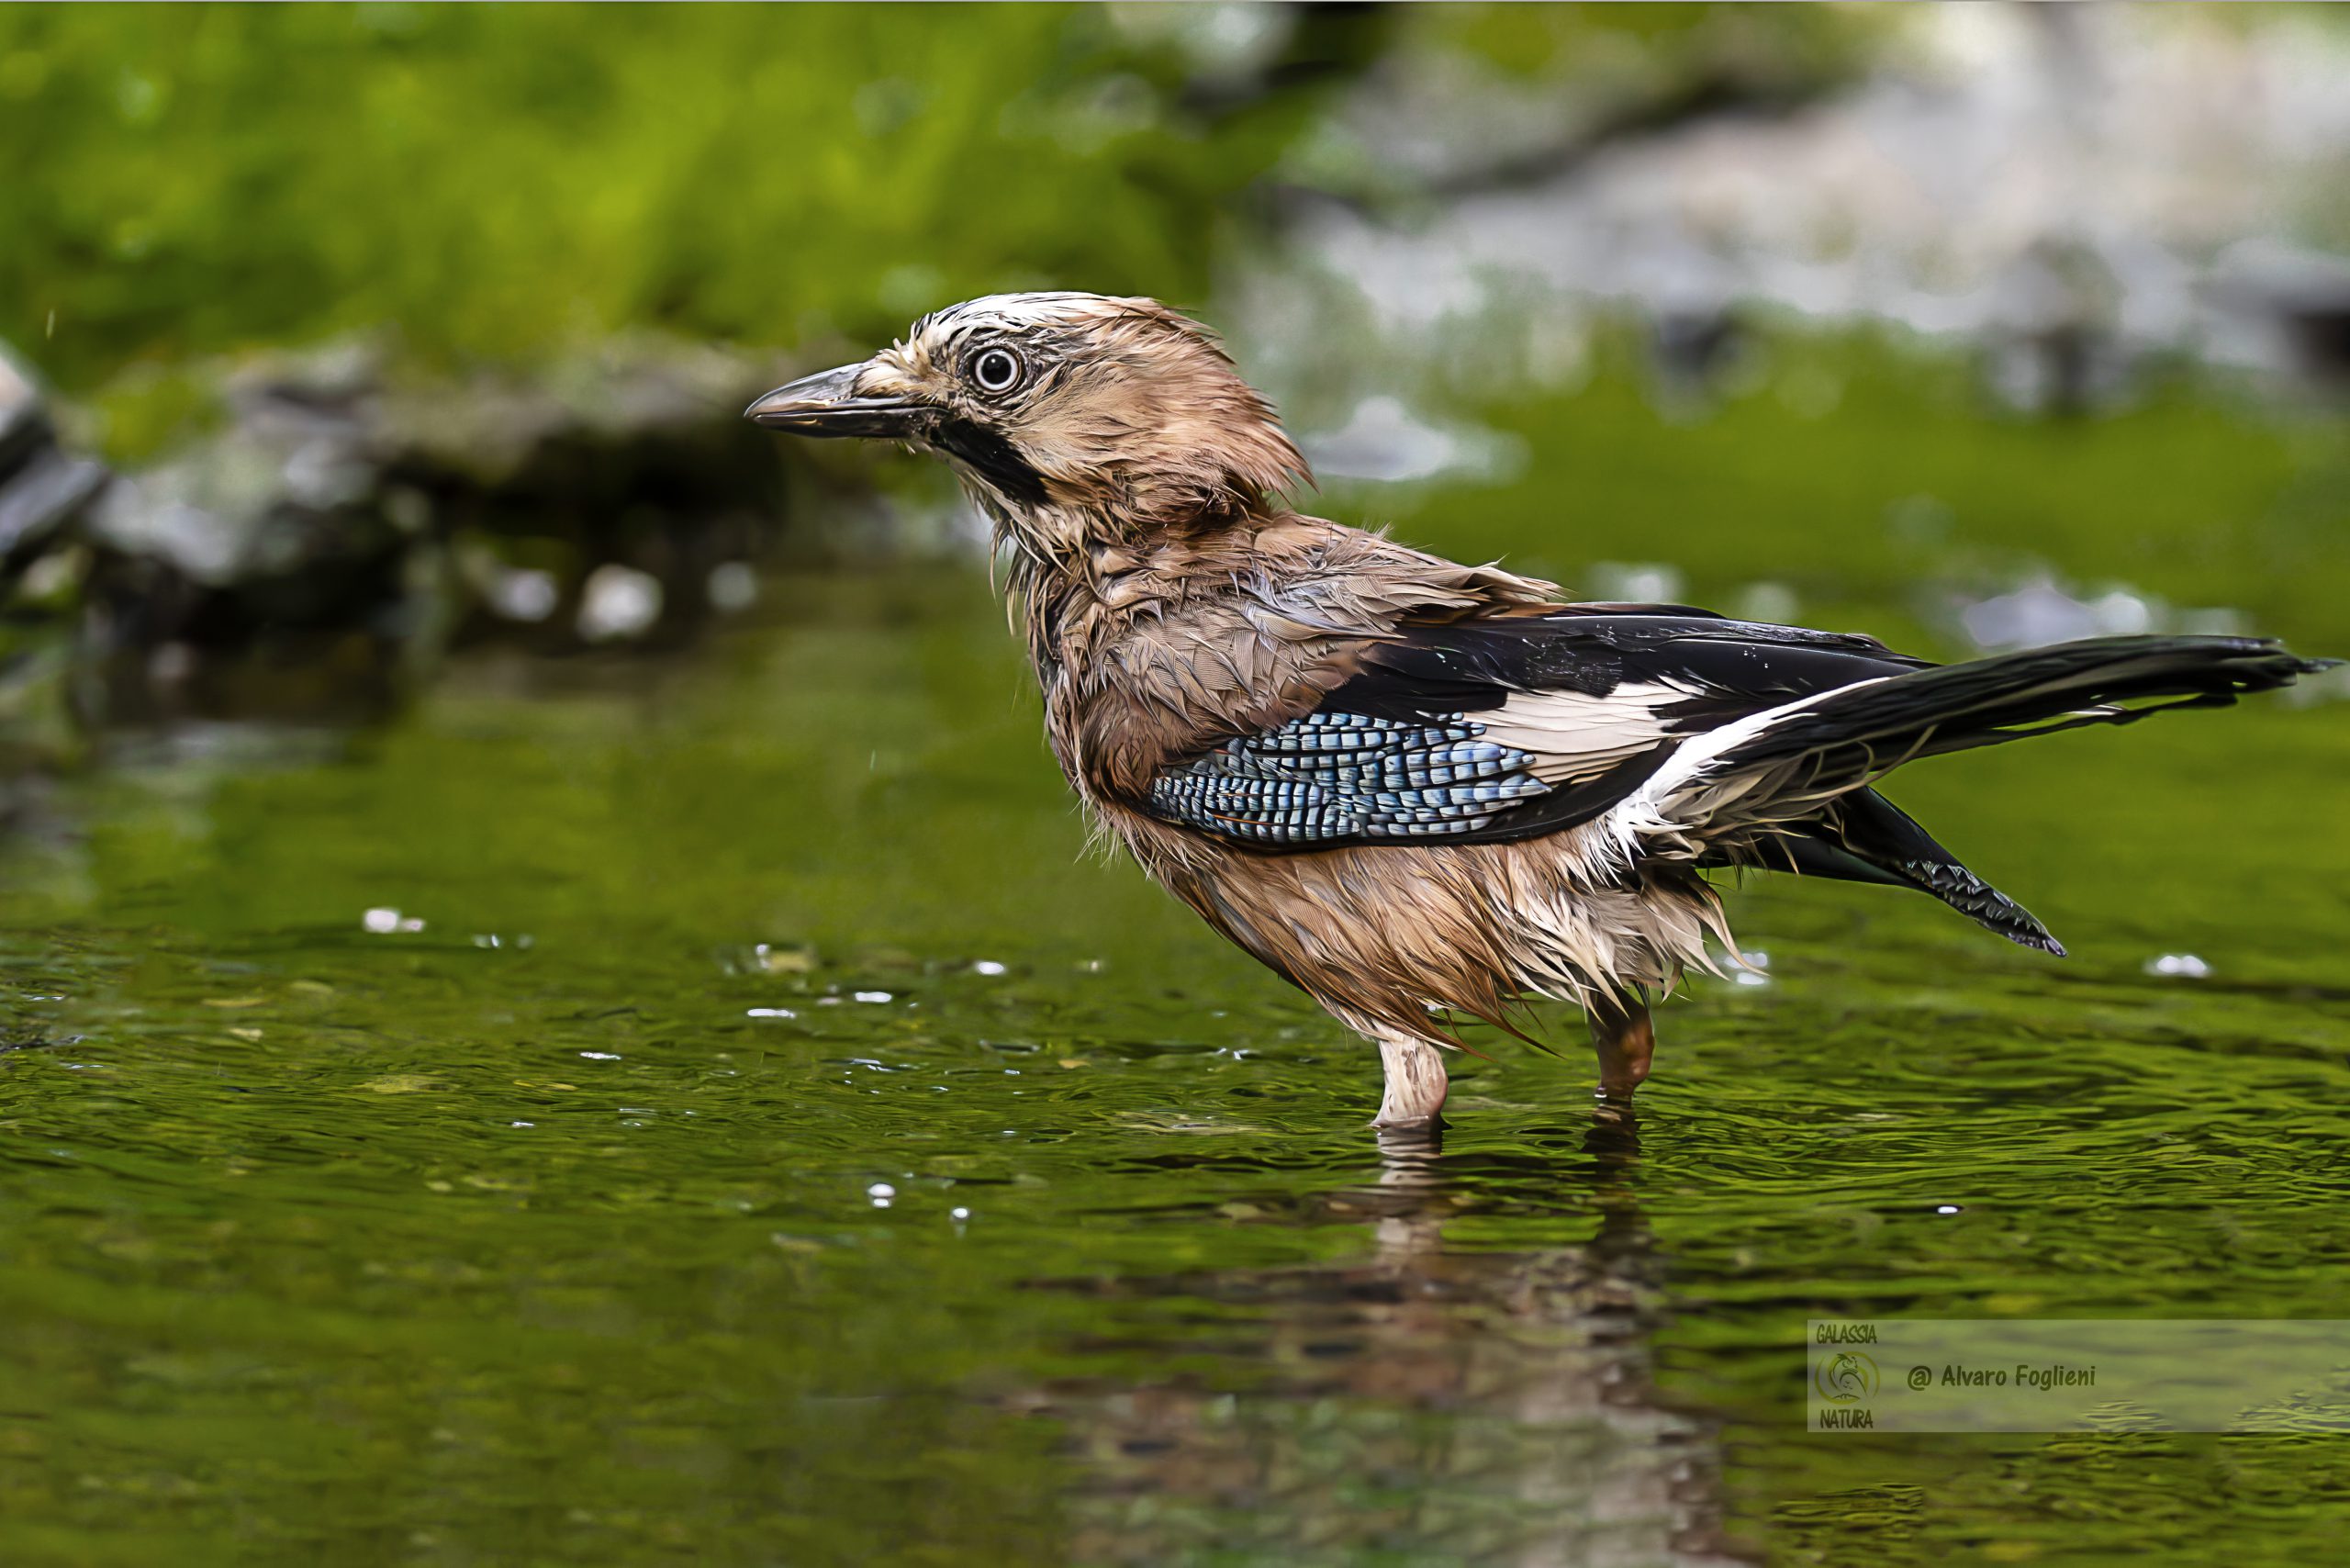 Perché gli uccelli fanno il bagno: pulizia, freschezza e volo efficiente